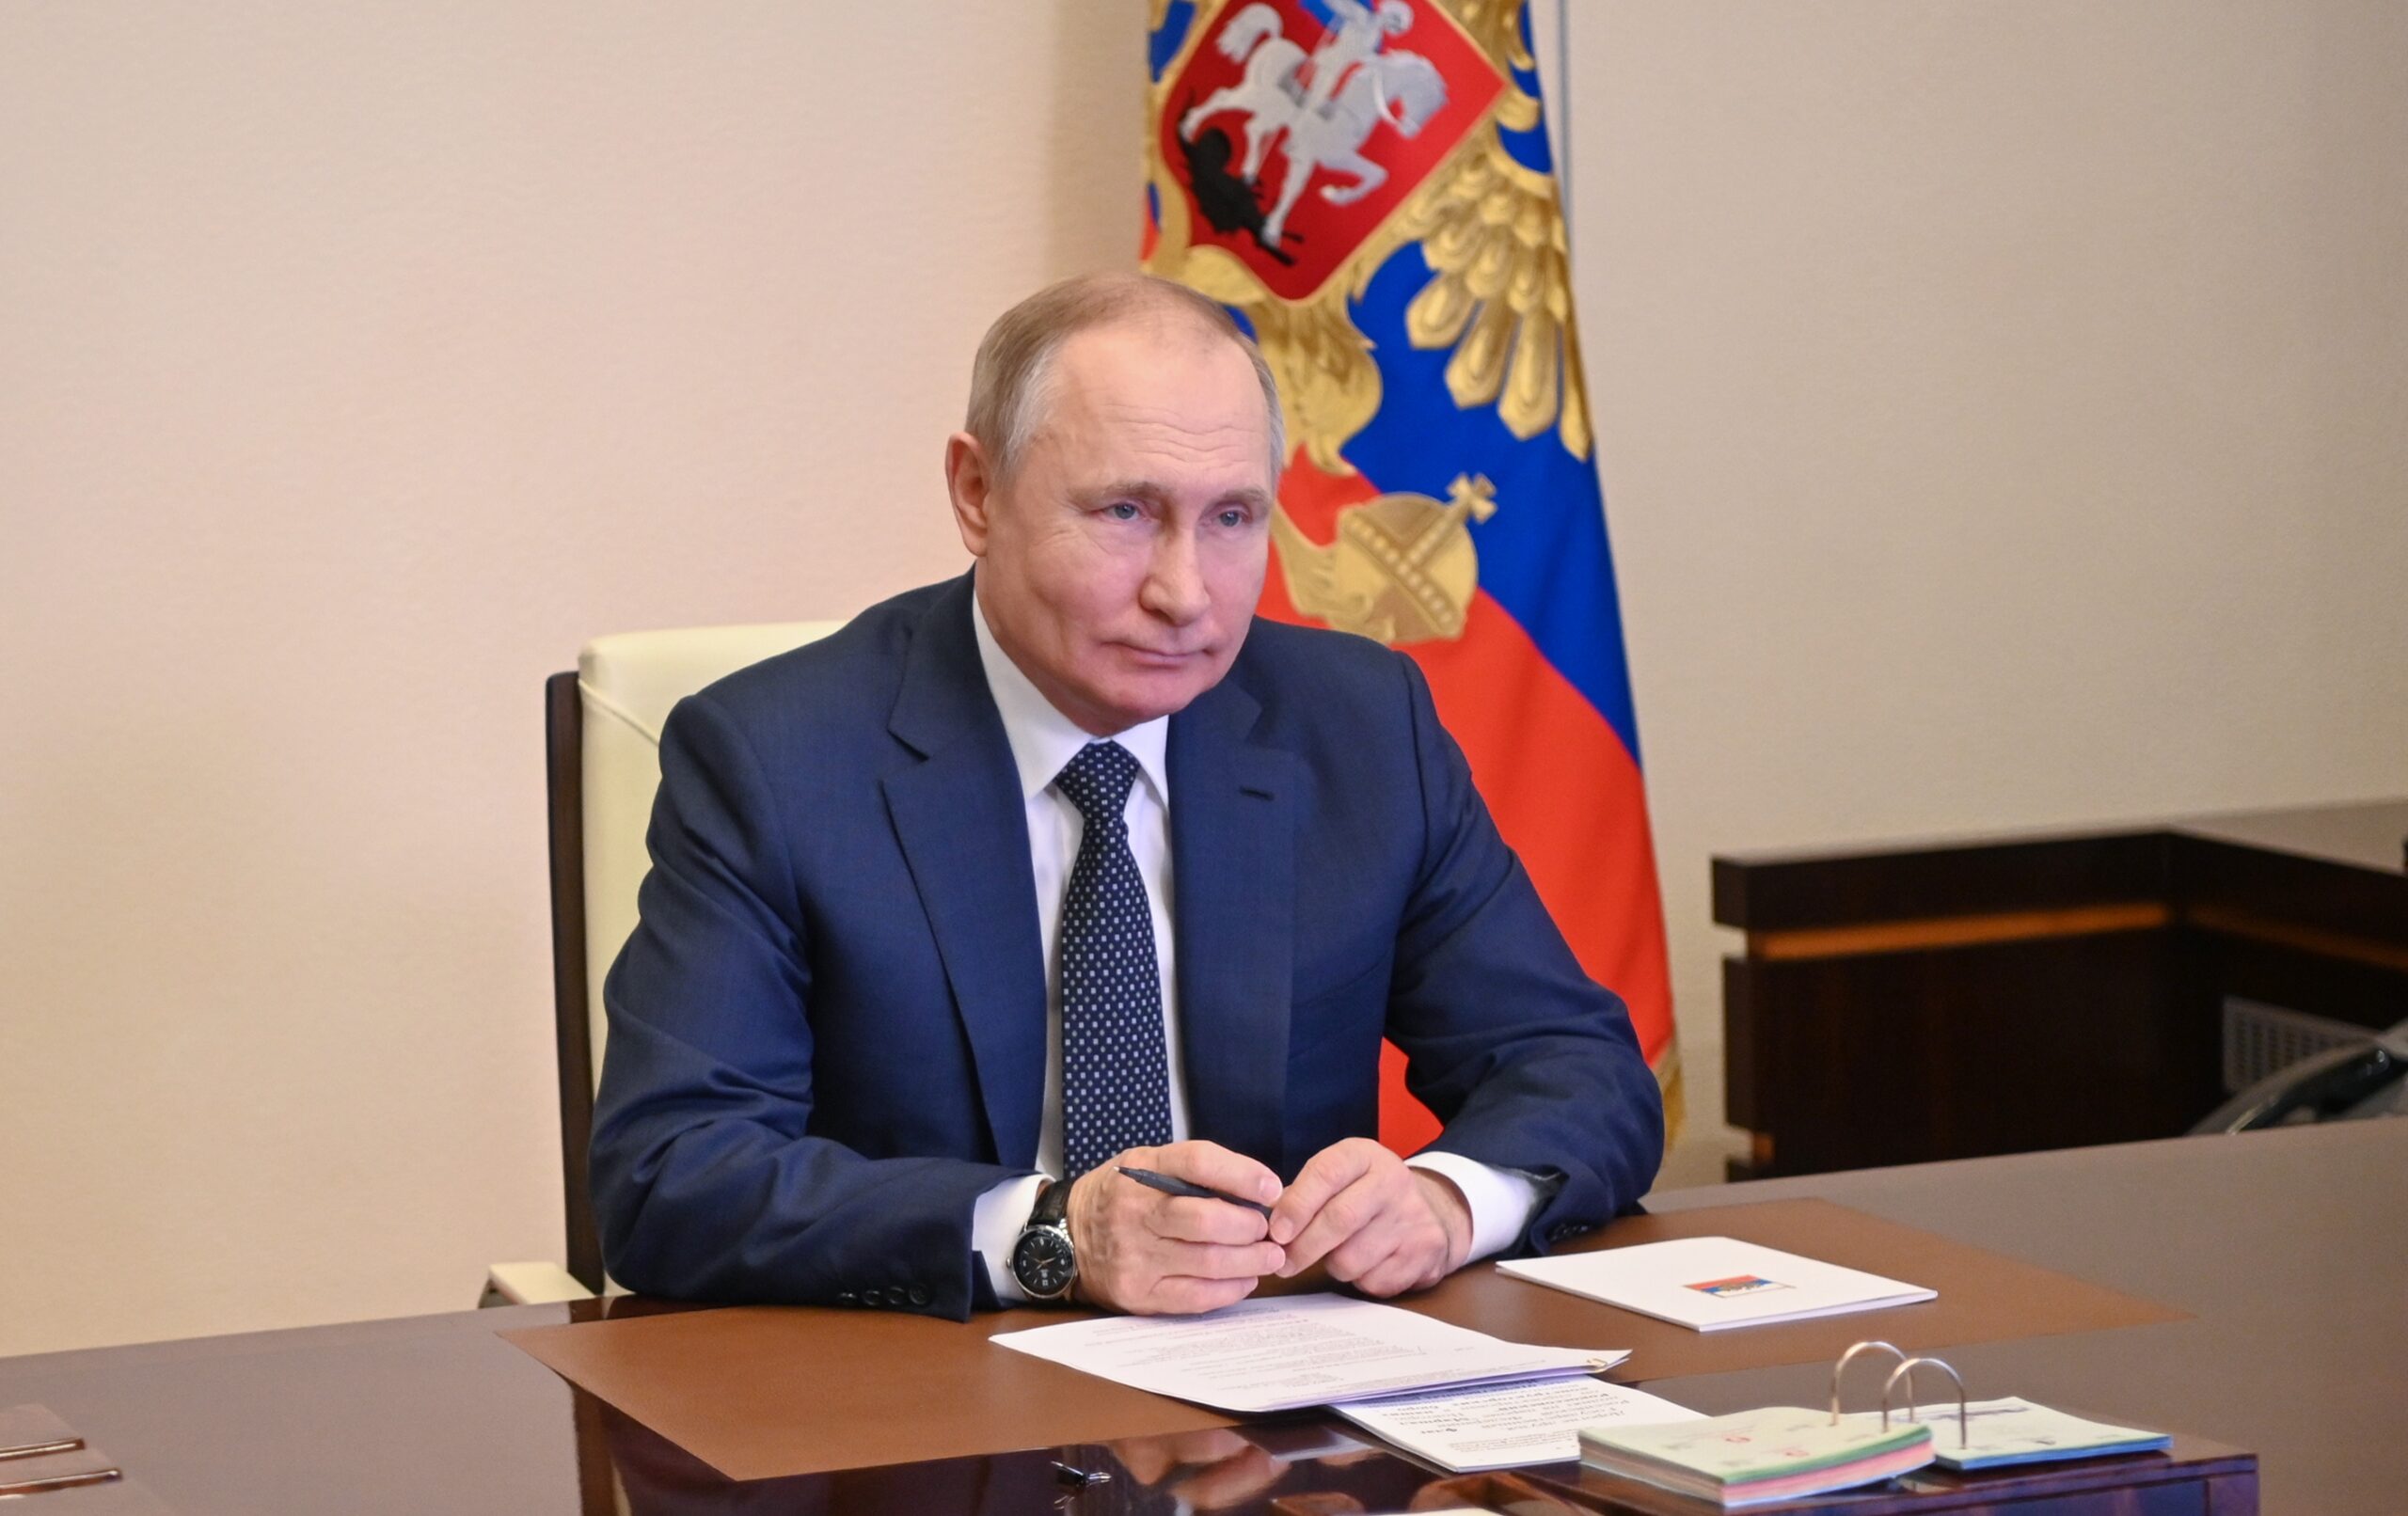 Rusya Devlet Başkanı Putin: Ukrayna ile görüşmeye hazırız